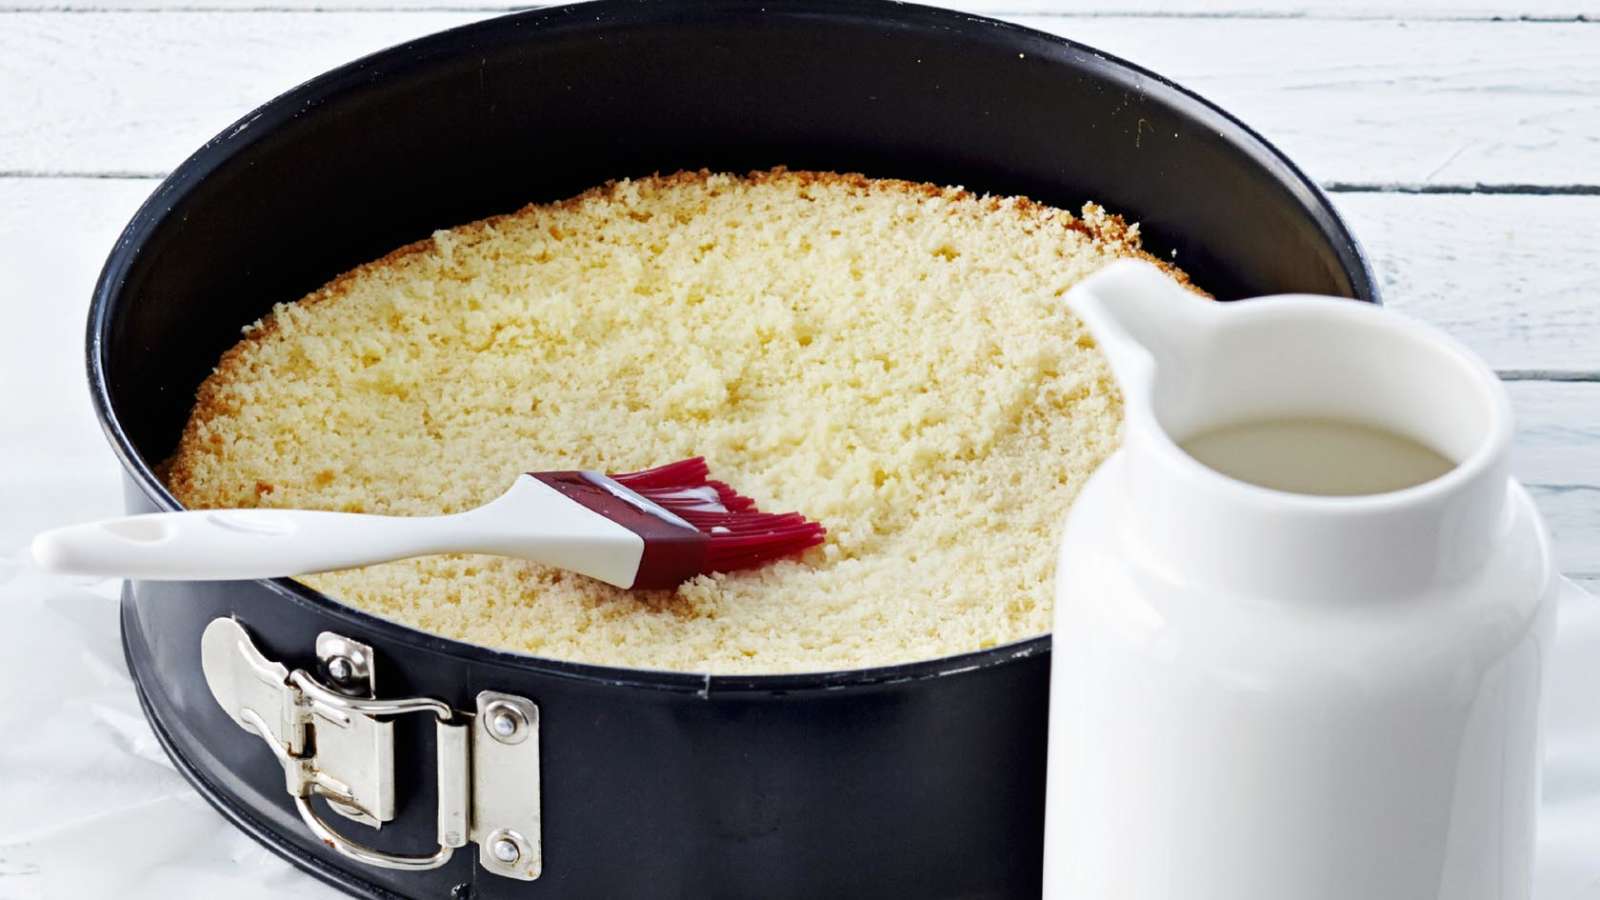 Nosta alin kakkulevy leivinpaperilla vuorattuun kakkuvuokaan. Kostuta kakkulevy maidolla.